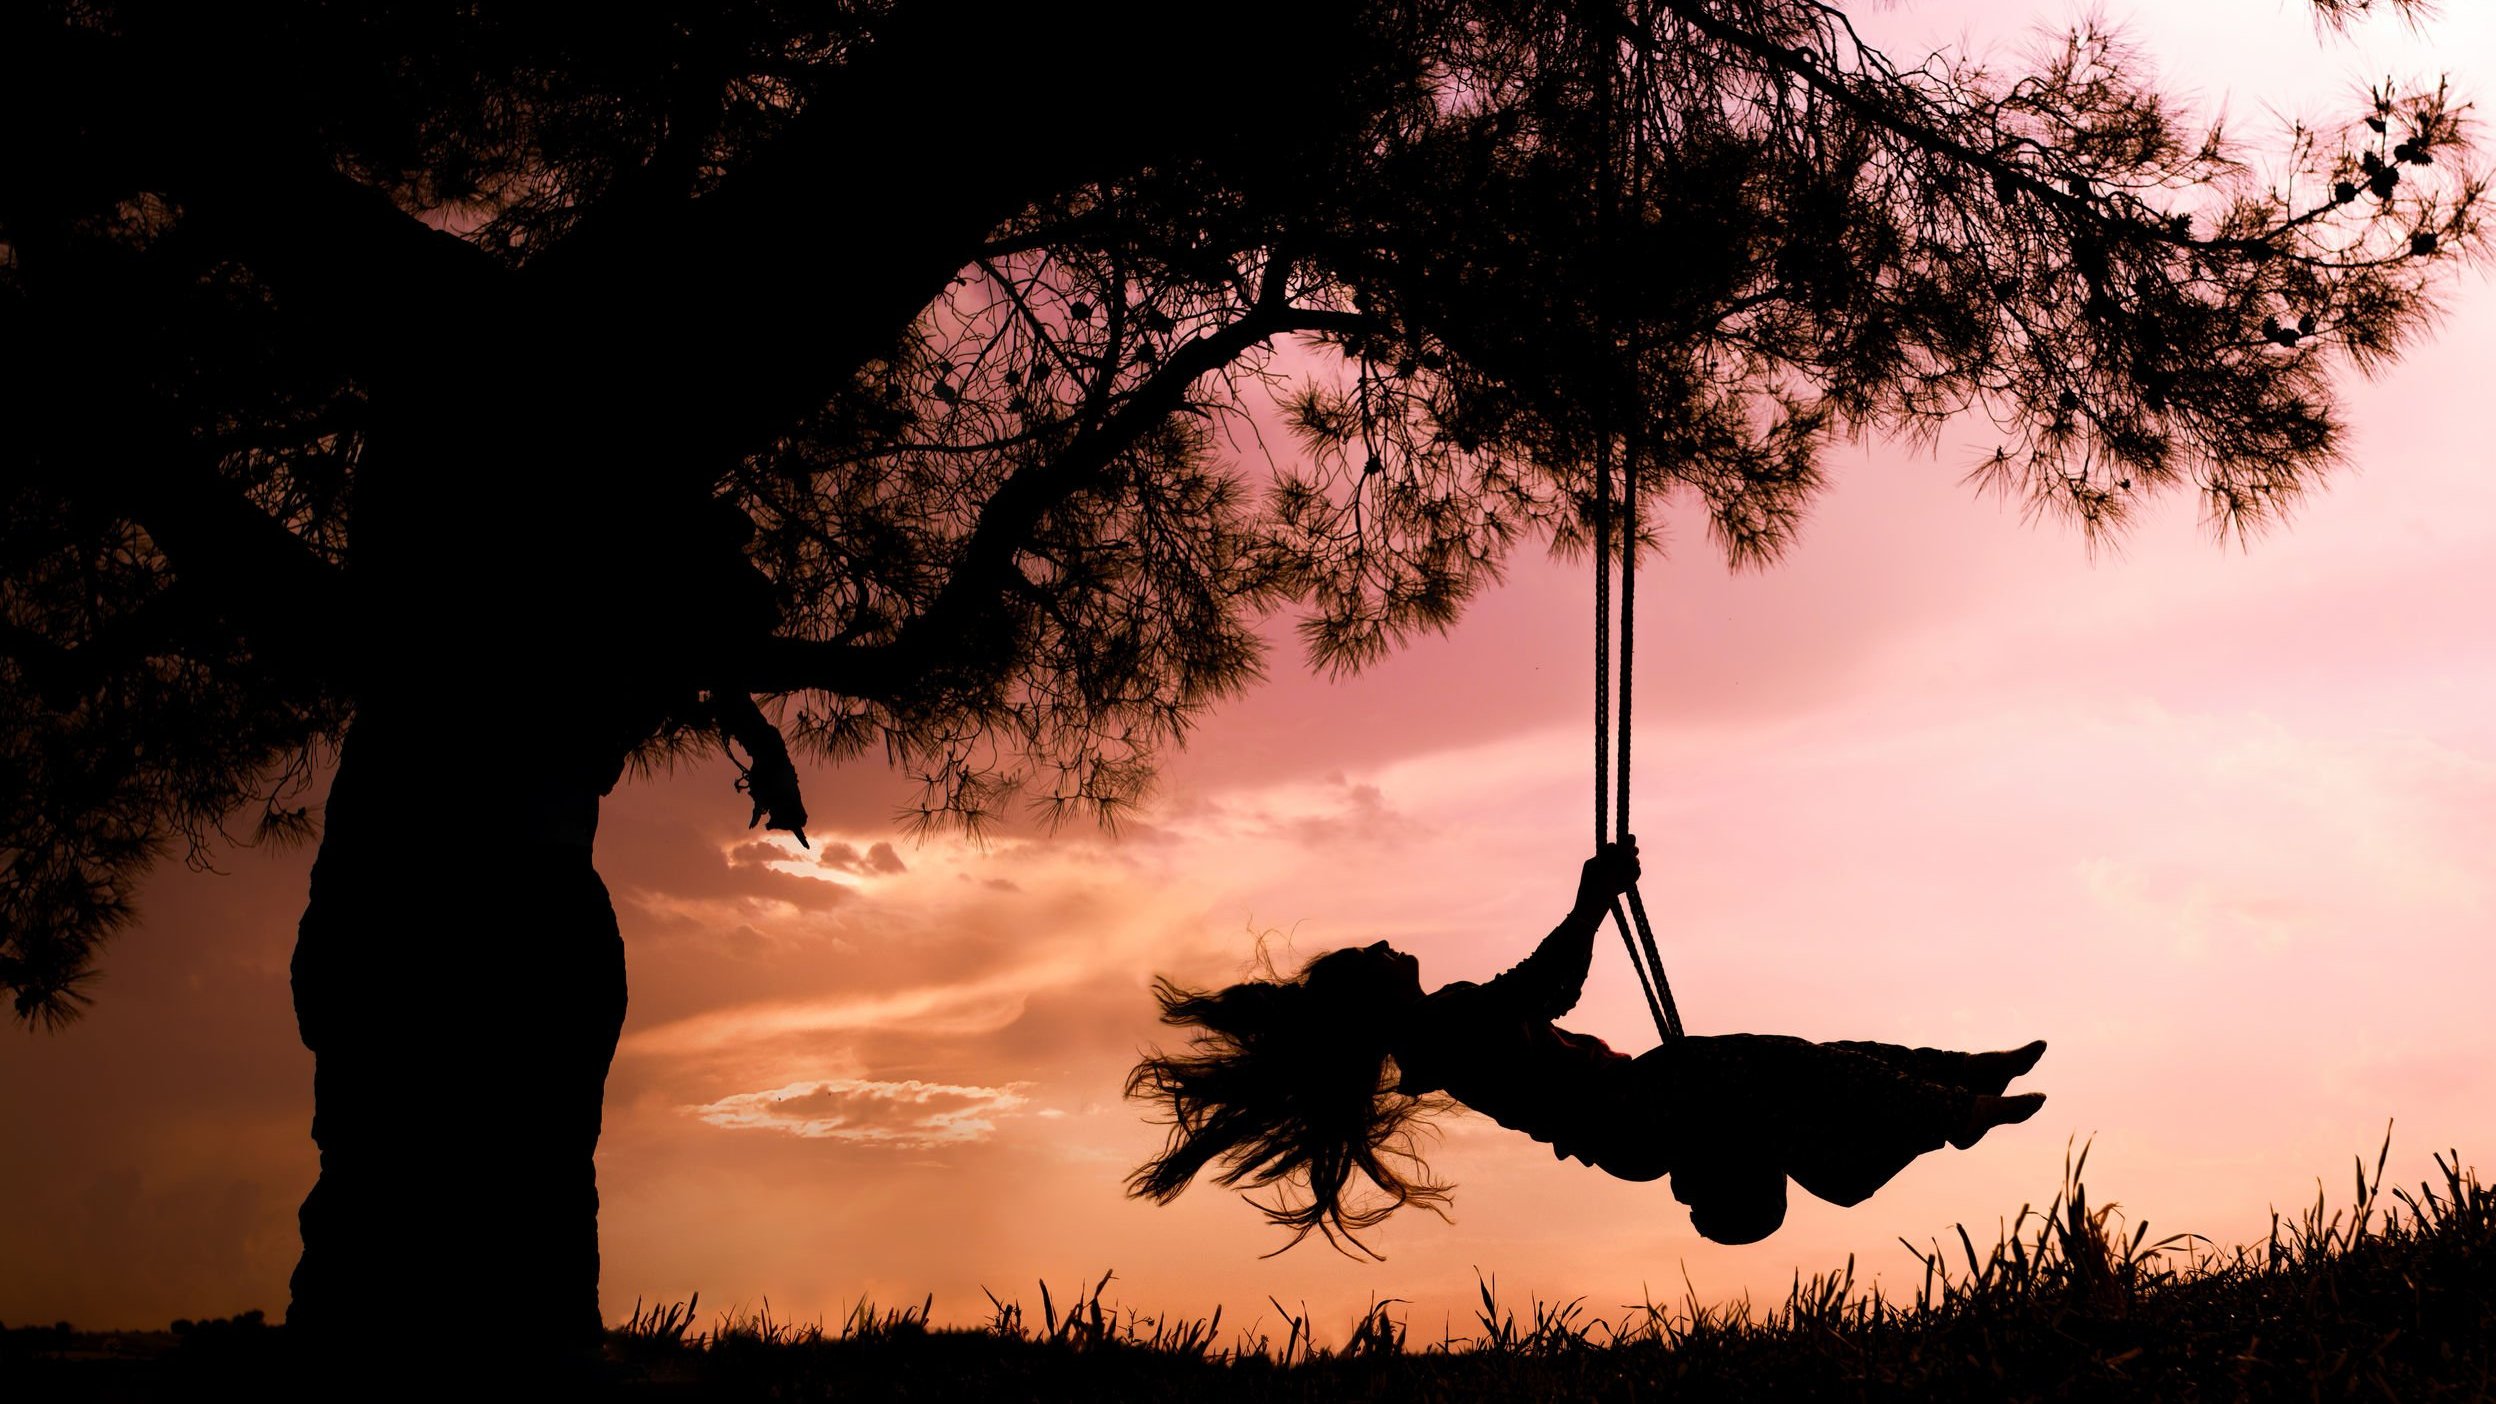 Silhueta de uma mulher se balançando num balanço numa árvore, com o céu na cor rosa.